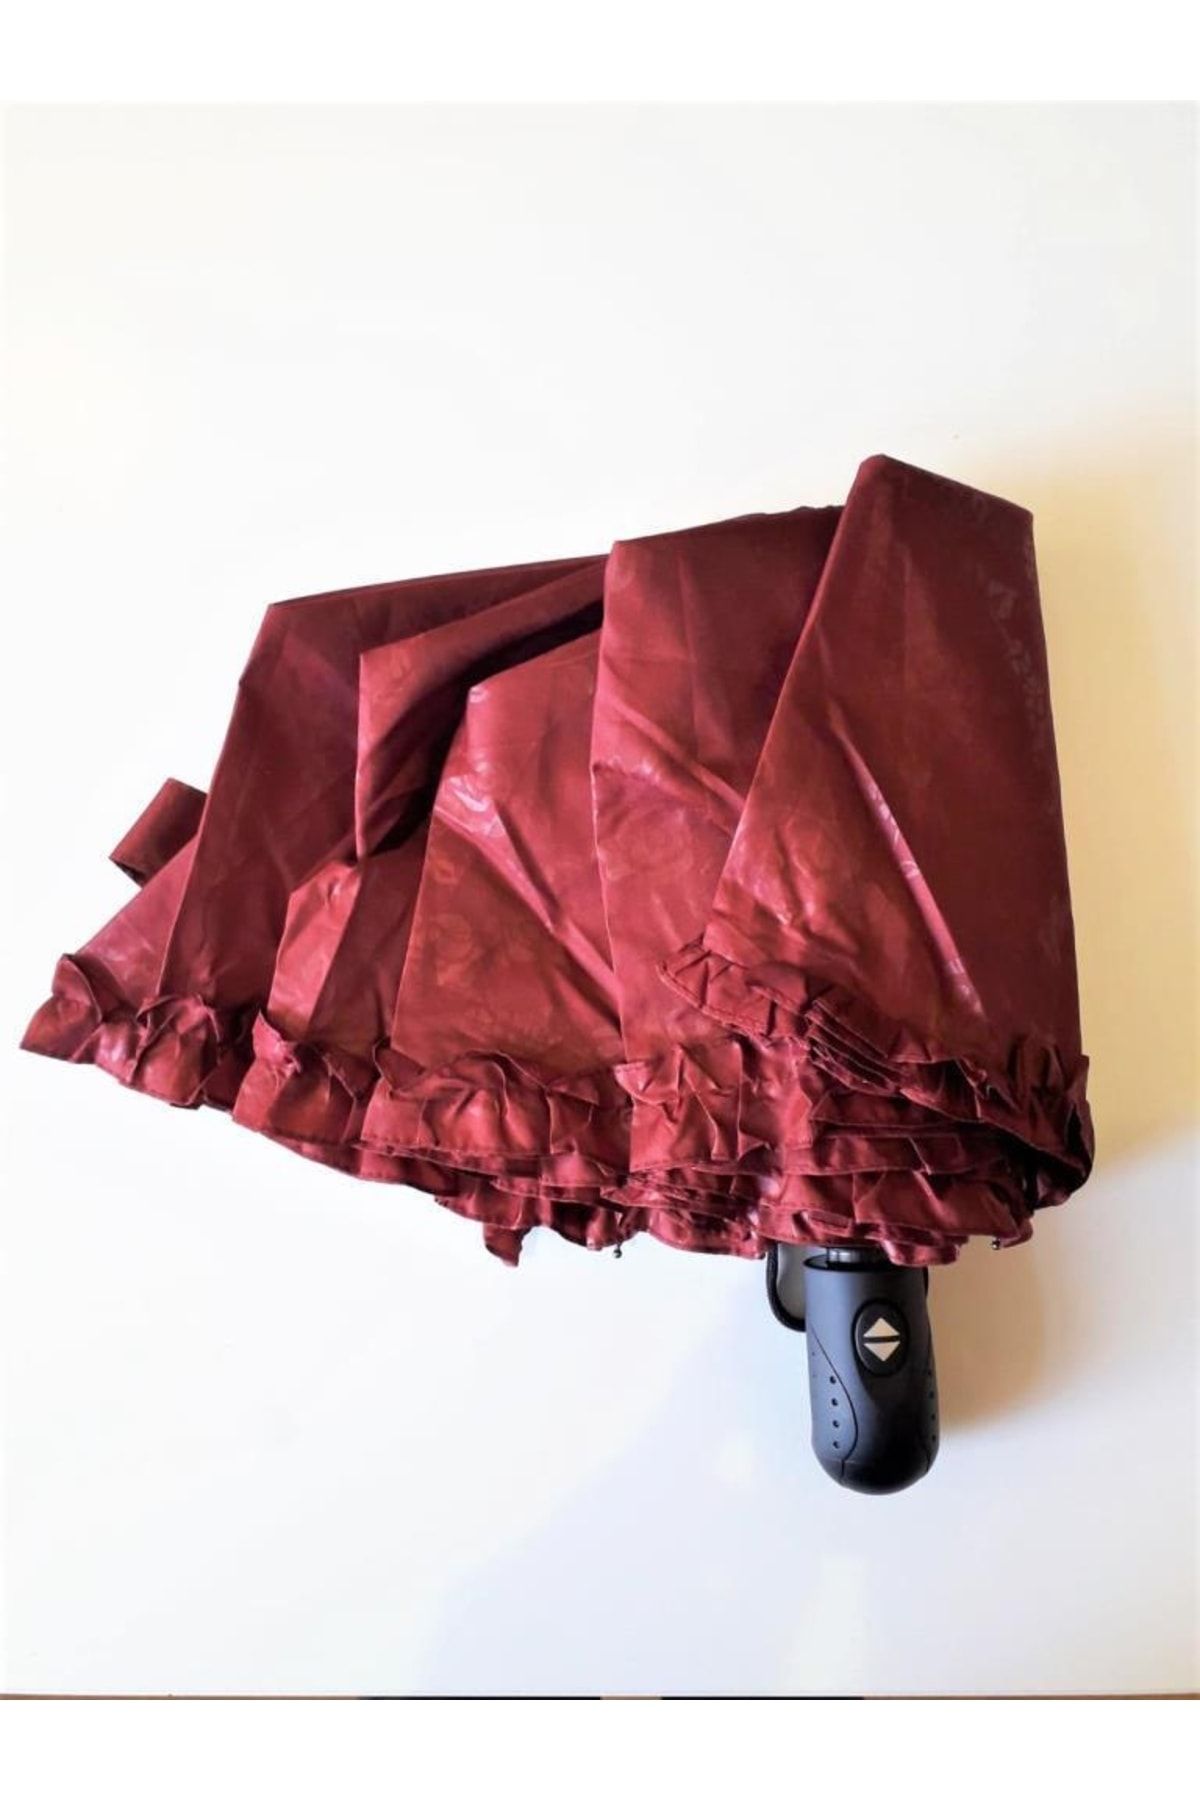 ELEVEN MARKETS Bordo Şemsiye Lüx Otomatik Fırfırlı Kadın Şemsiyesi Çanta Boy